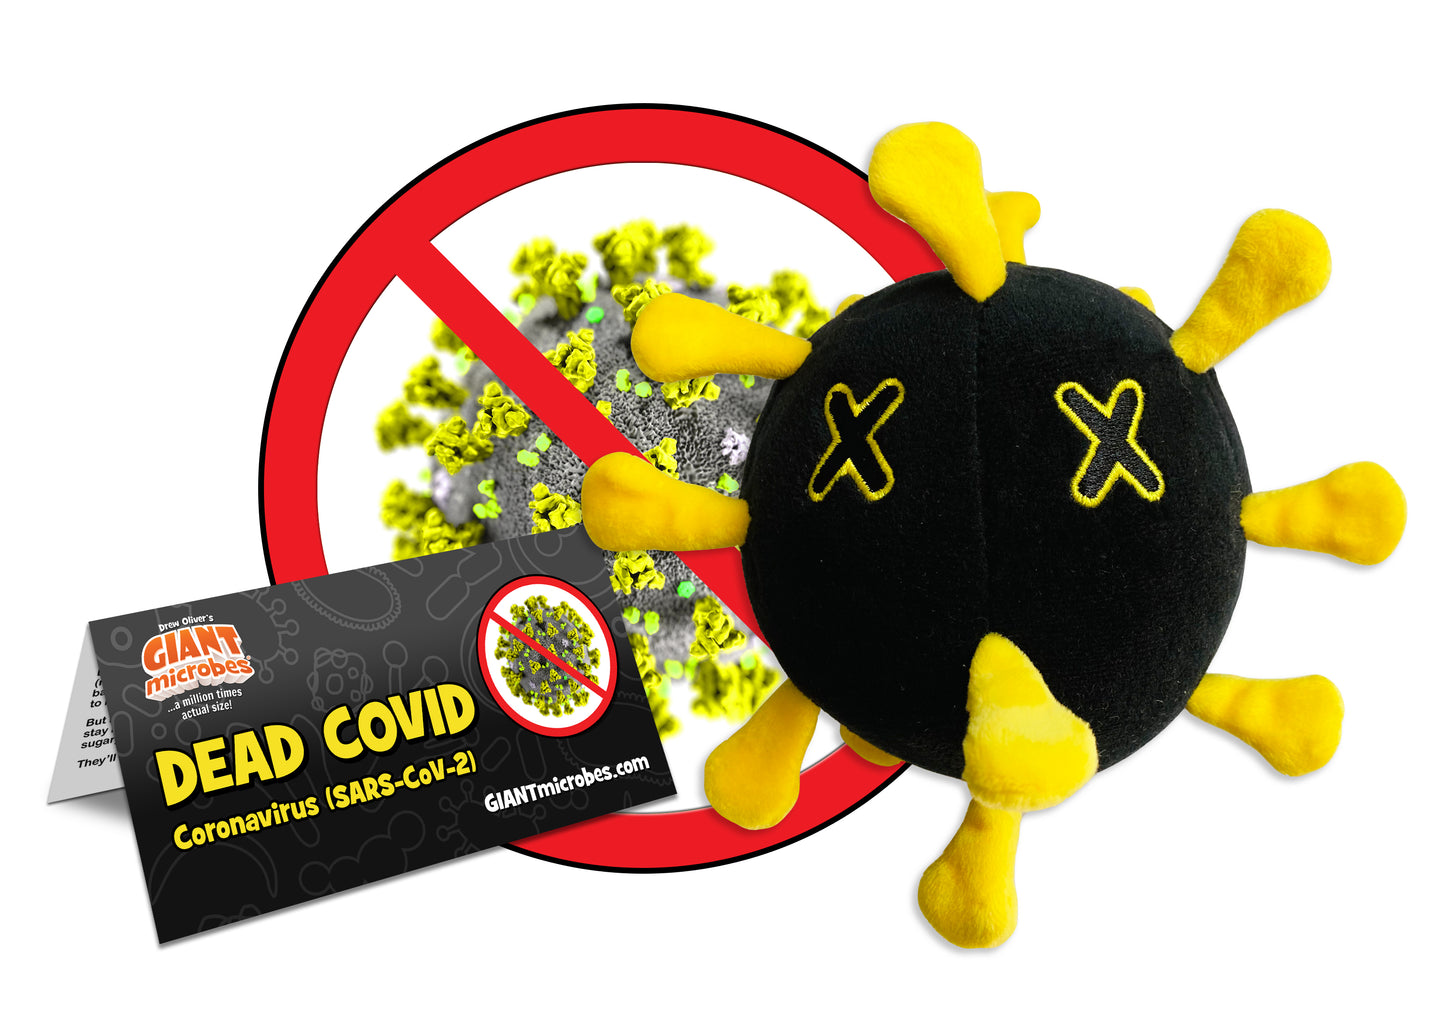 Dead COVID (SARS-CoV-2)